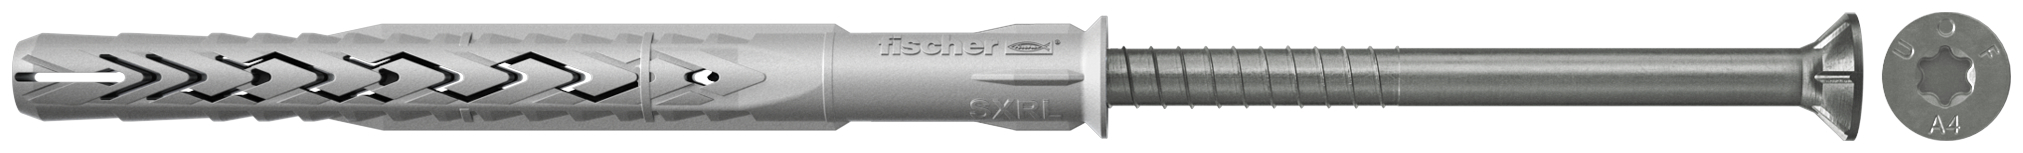 fischer Tasselli prolungati SXRL 10X140 T A4 (1 Pz.) Tassello prolungato in nylon con marcatura CE con vite premontata in acciaio inox A4, T.S.P. impronta torx.